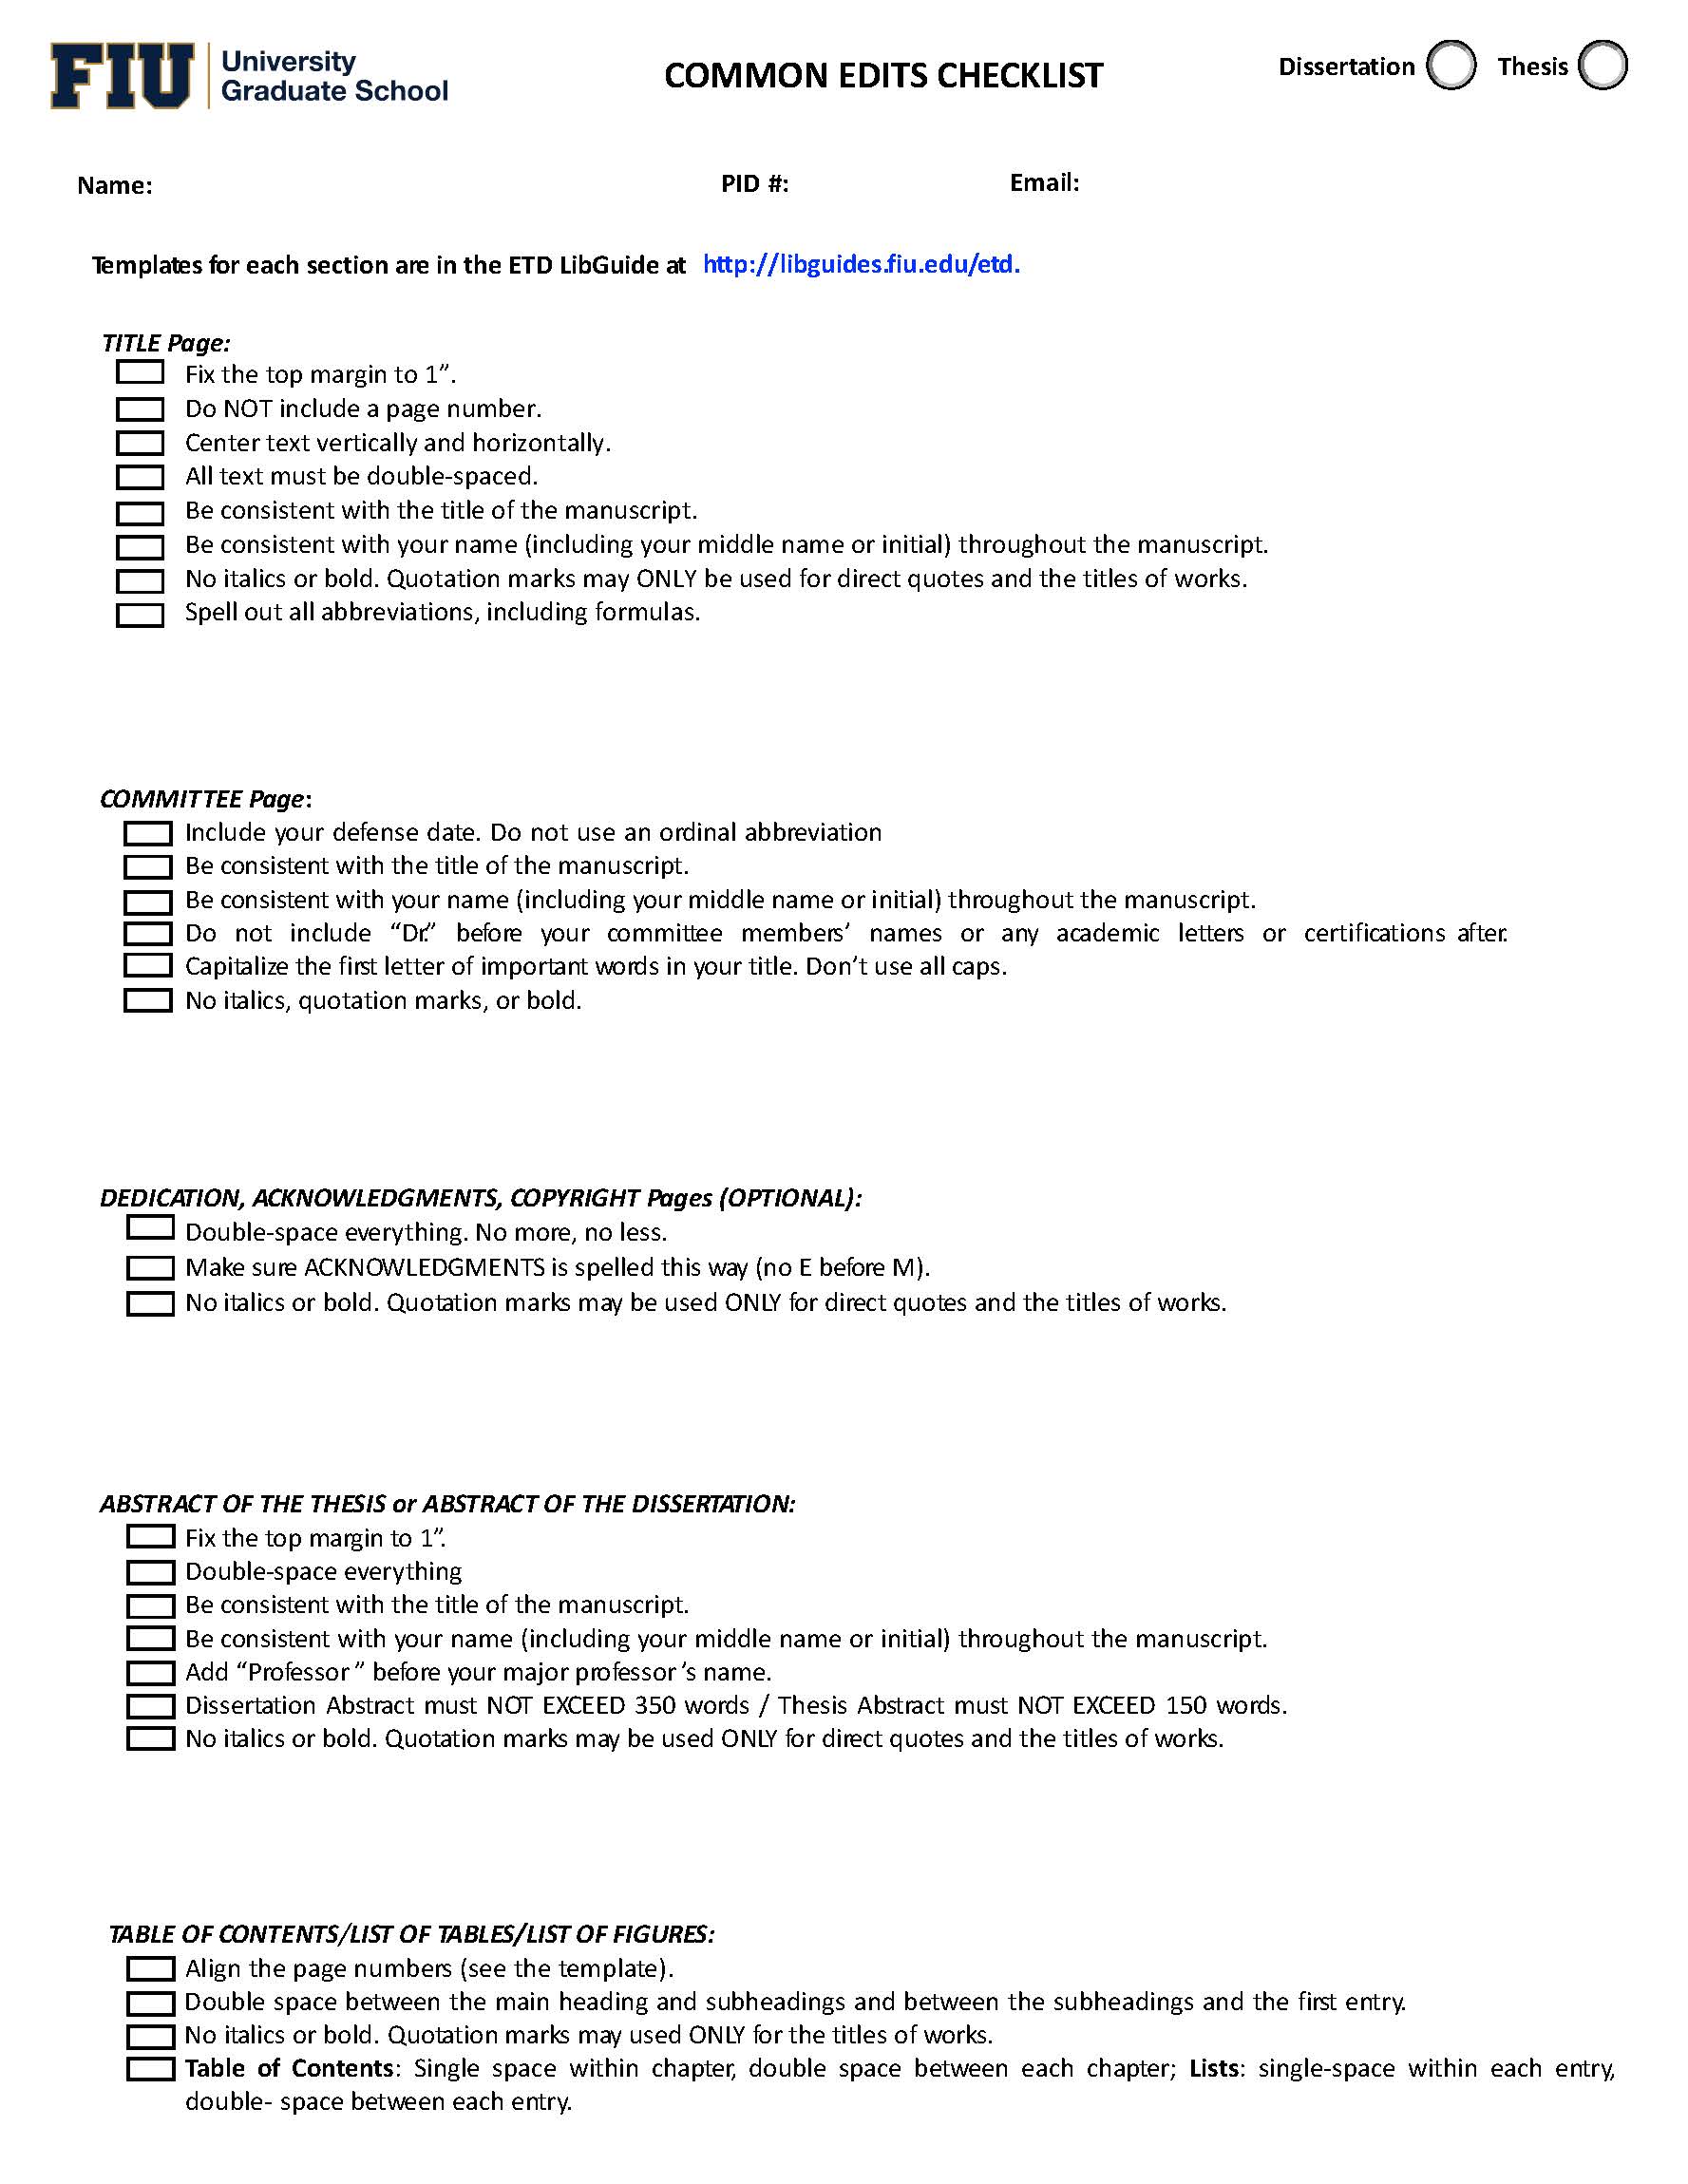 dissertation checklist uk